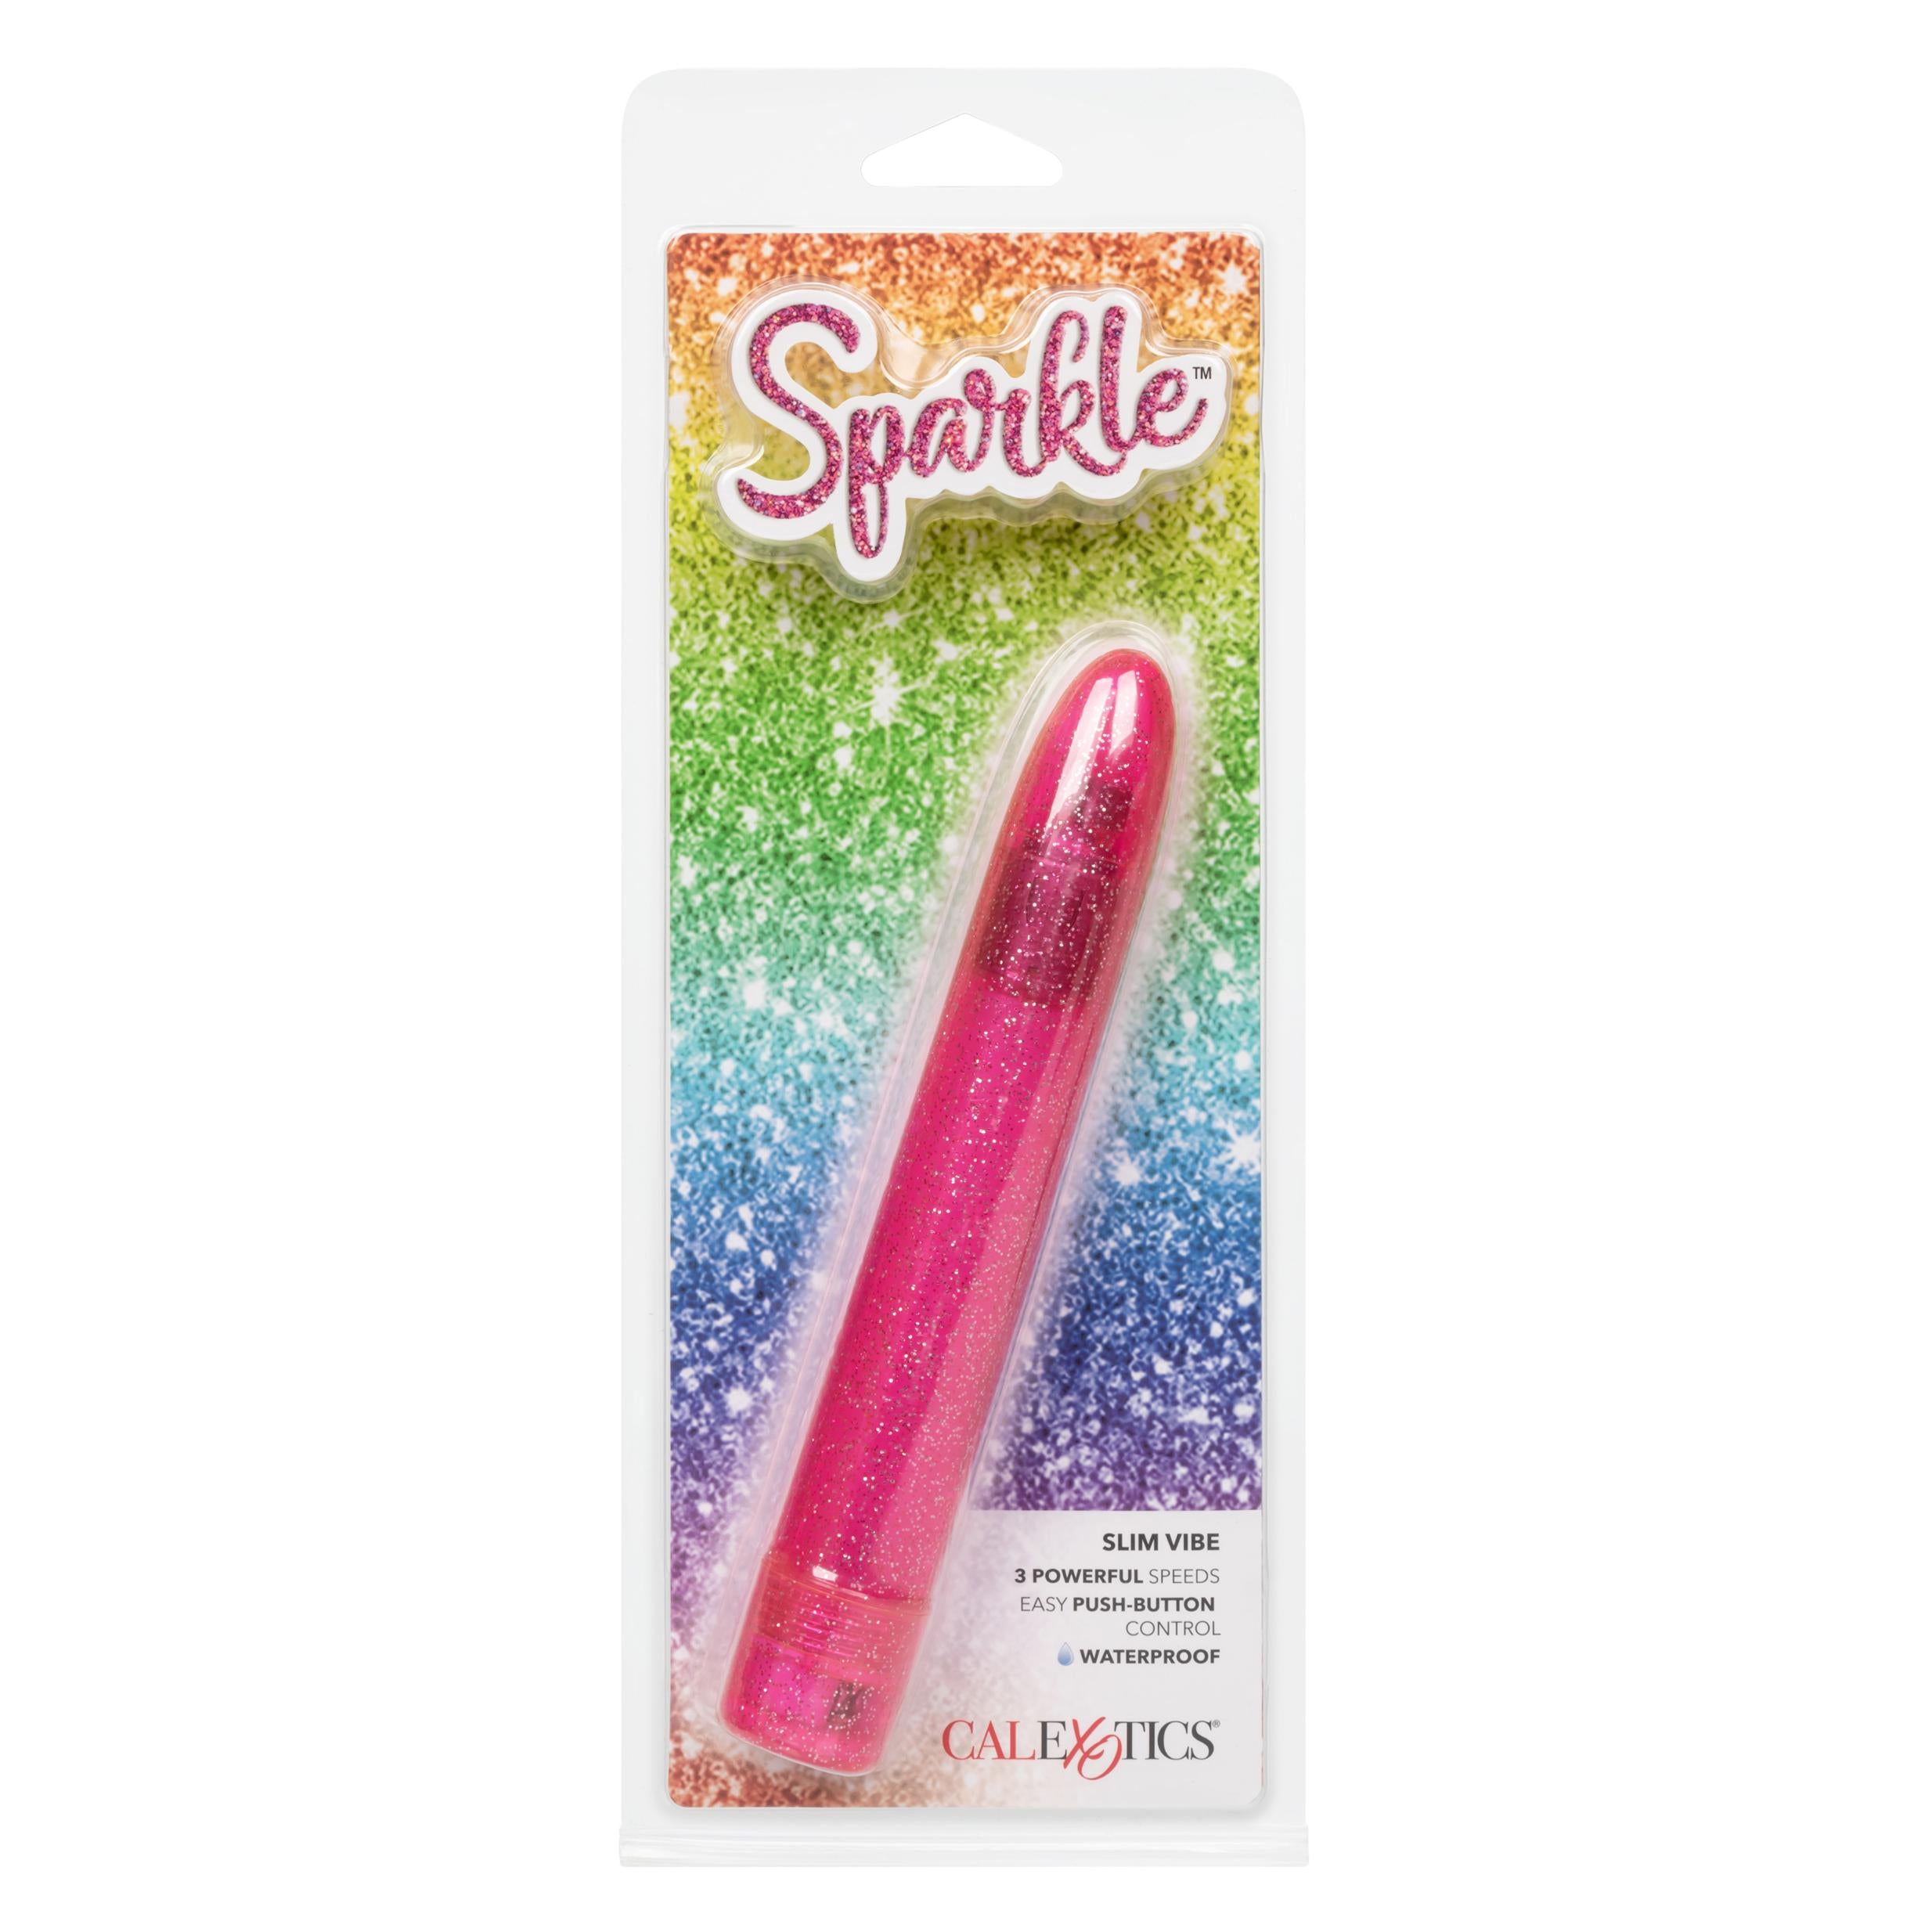 Sparkle Slim Vibe Blue - Sensational Pleasure Pink